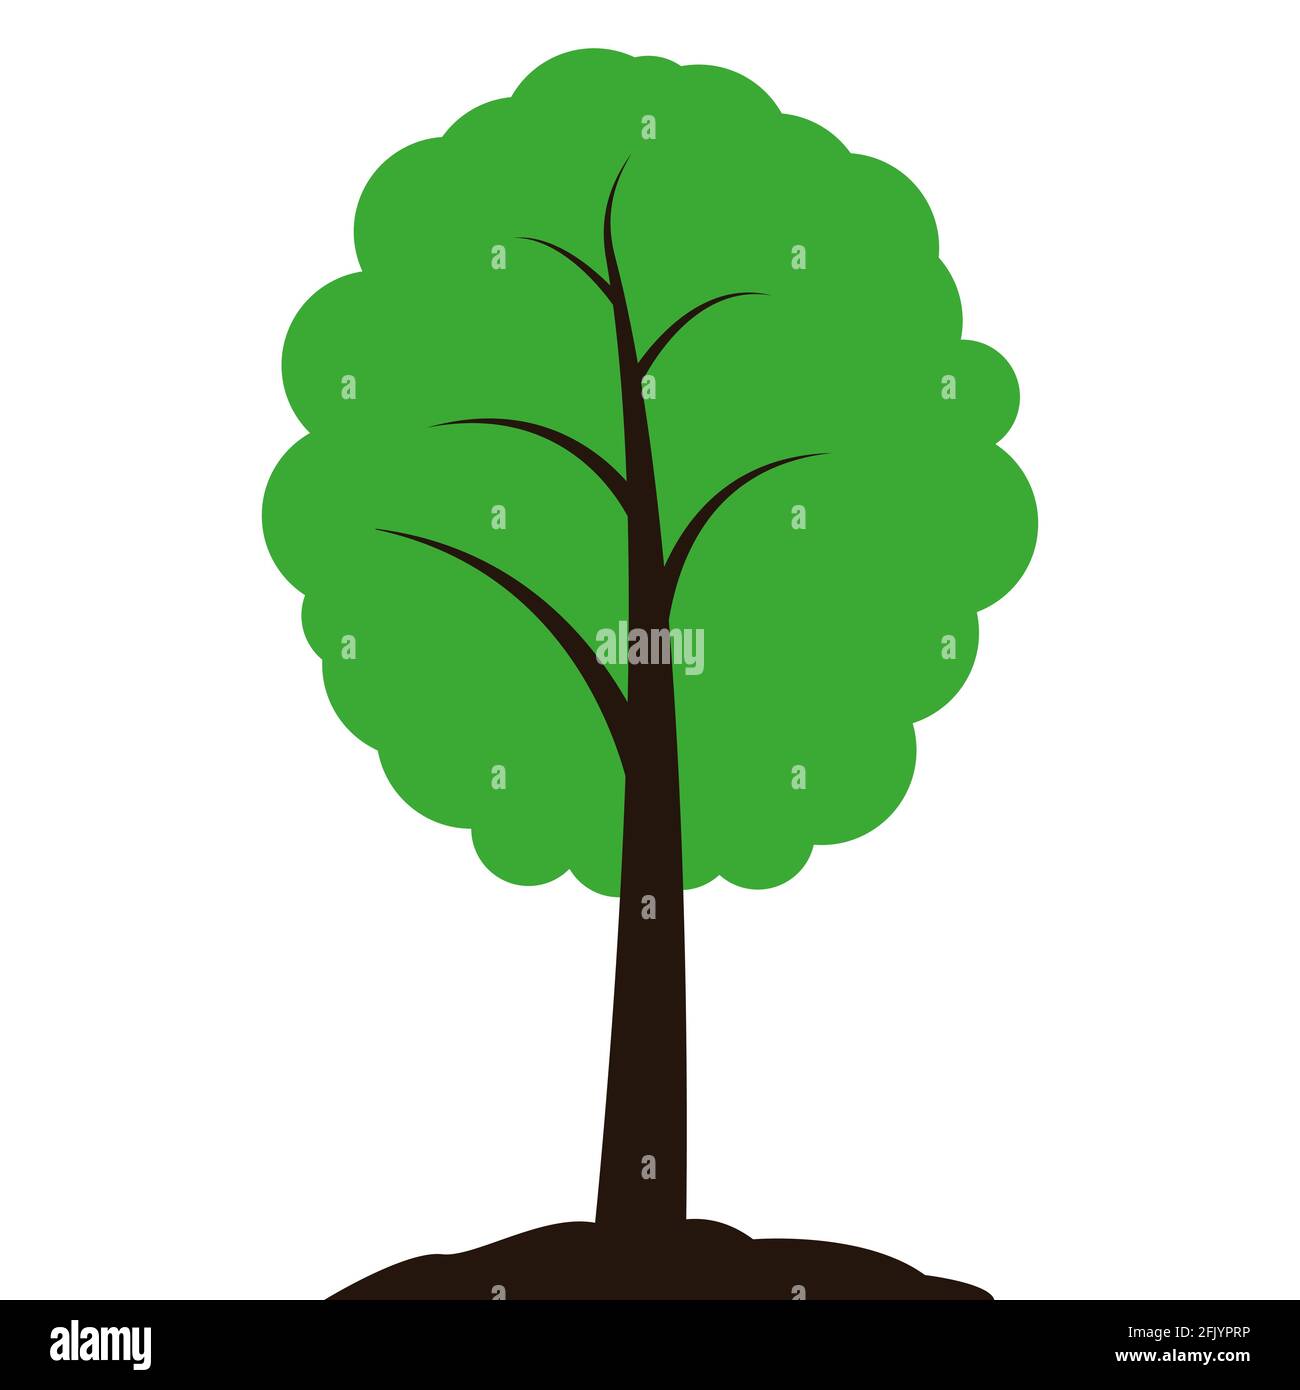 Baum mit Blättern. Vorlage für Logo-Design, Abzeichen, Aufkleber